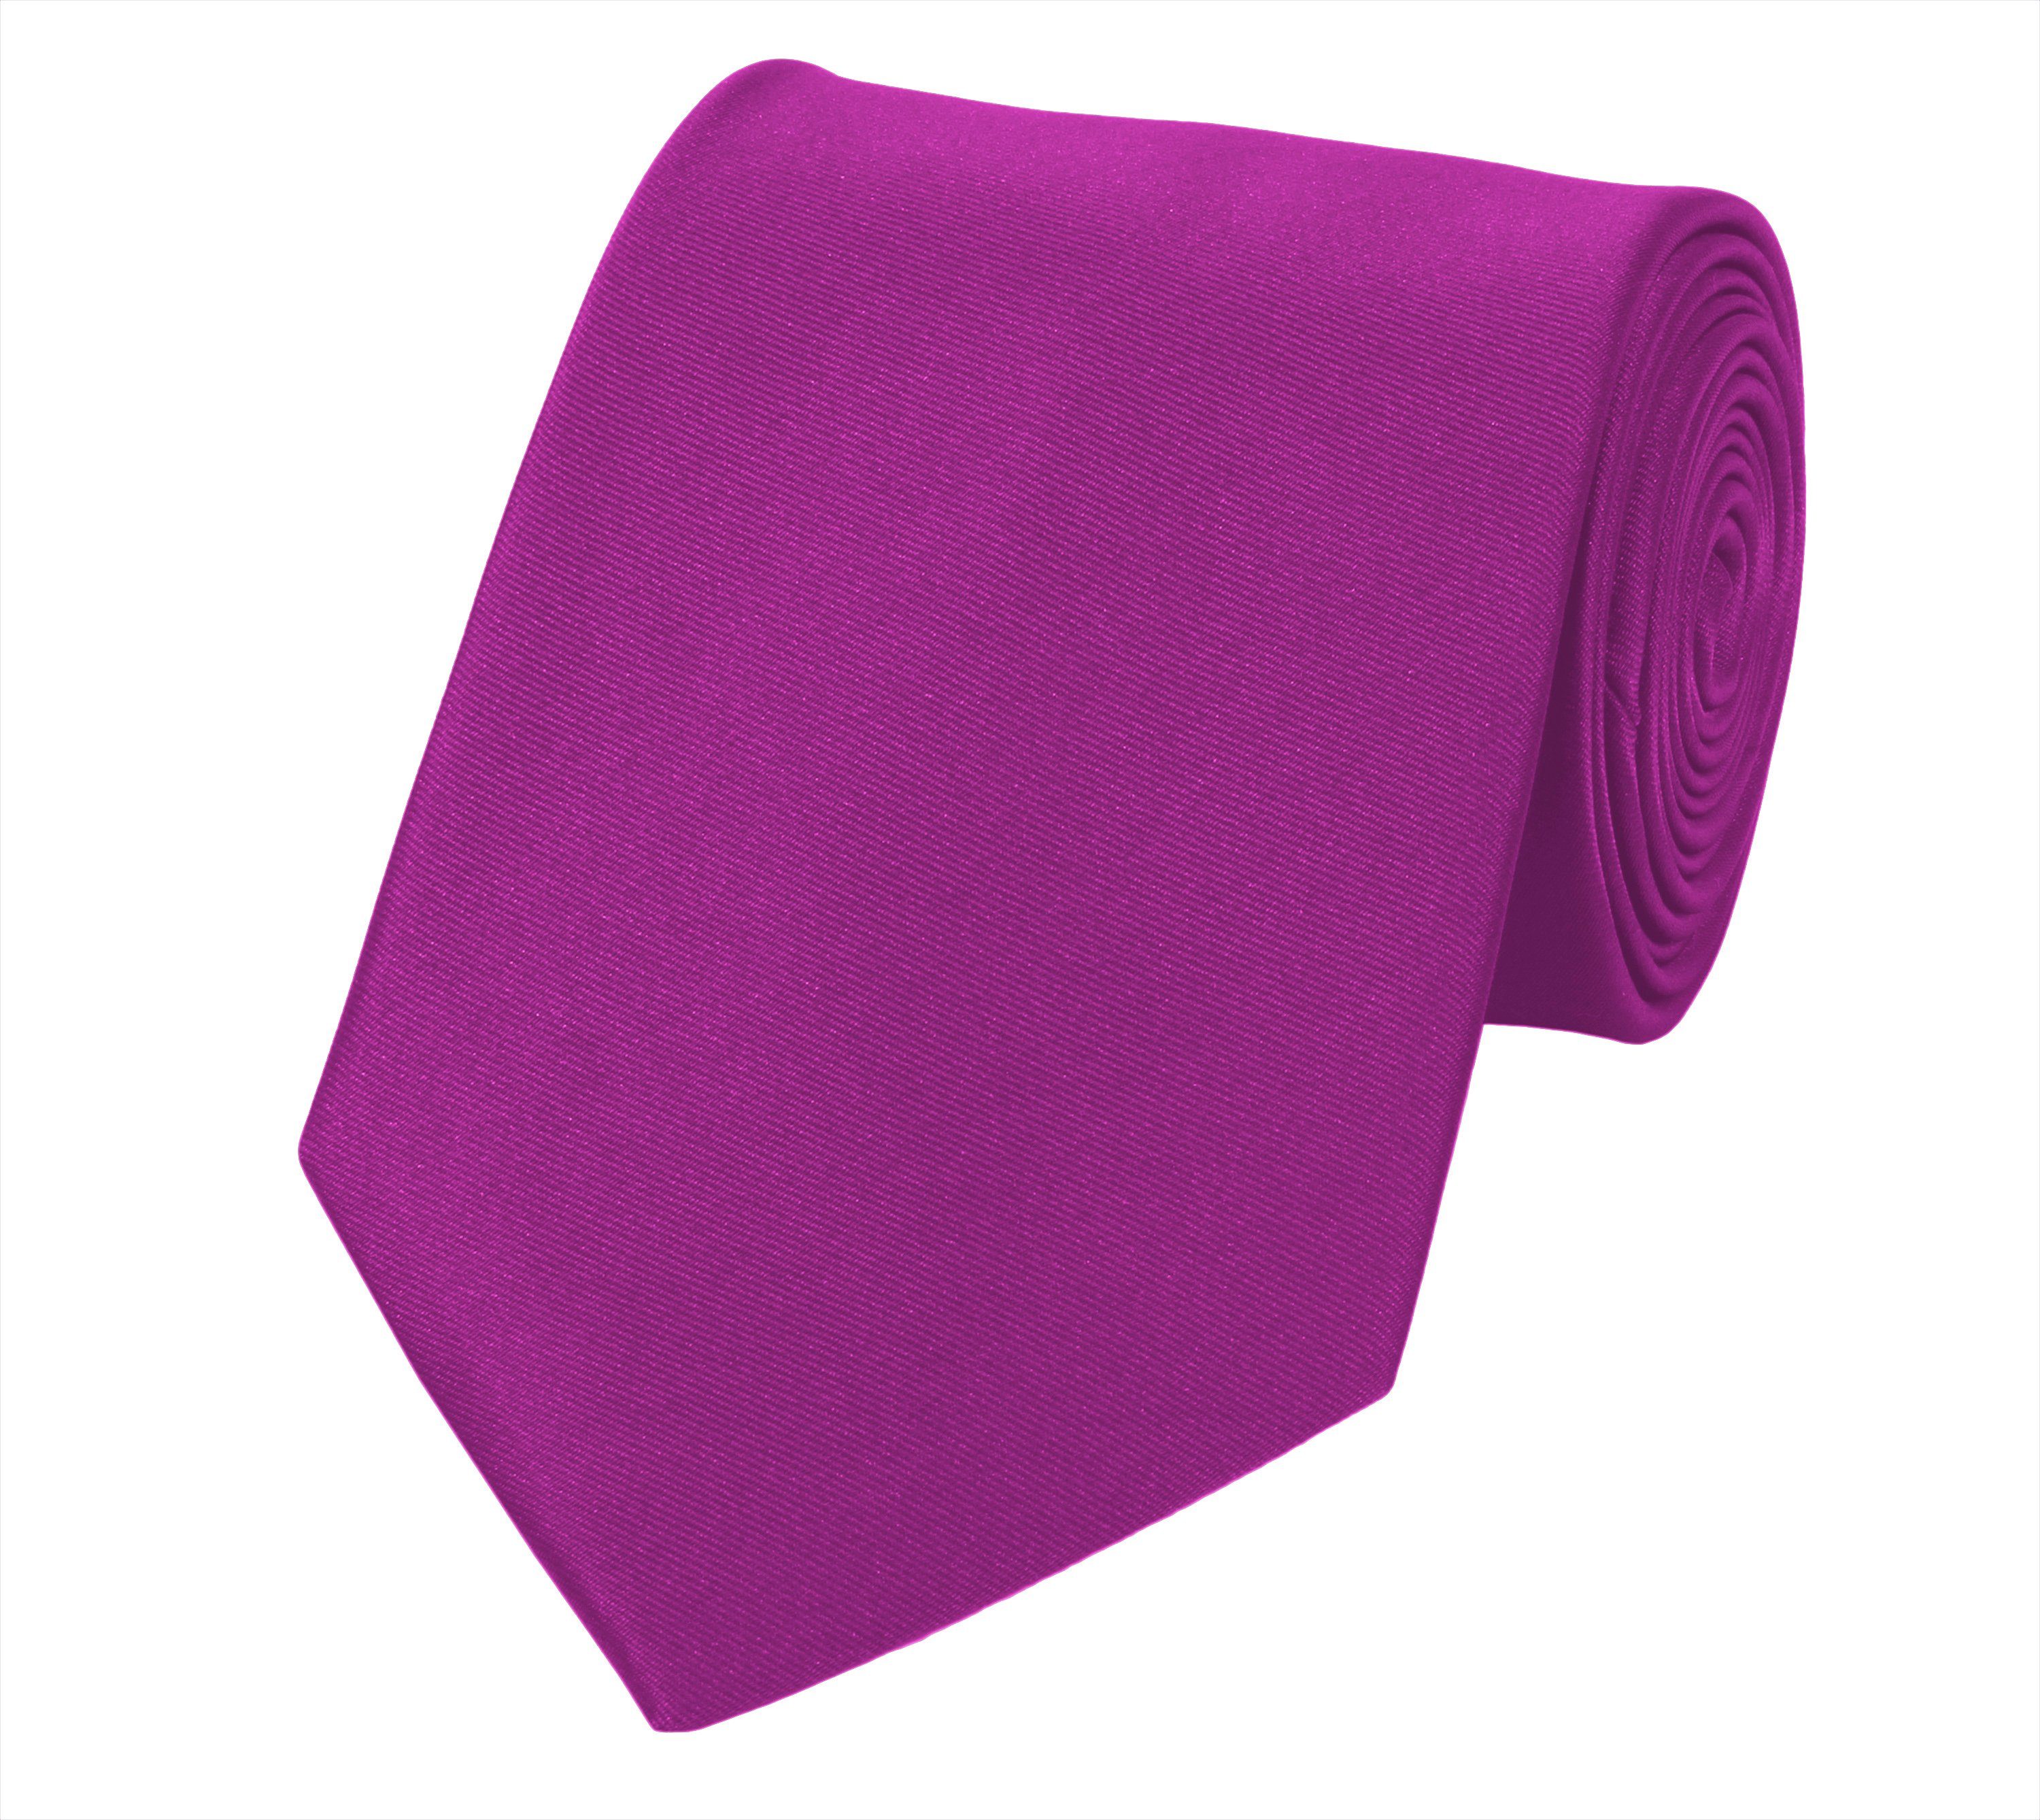 Fabio Farini Krawatte Herren Krawatte Rosa - verschiedene Rosa Männer Schlips in 8cm (ohne Box, Unifarben) Breit (8cm), Pink - Lilly Pink | Breite Krawatten